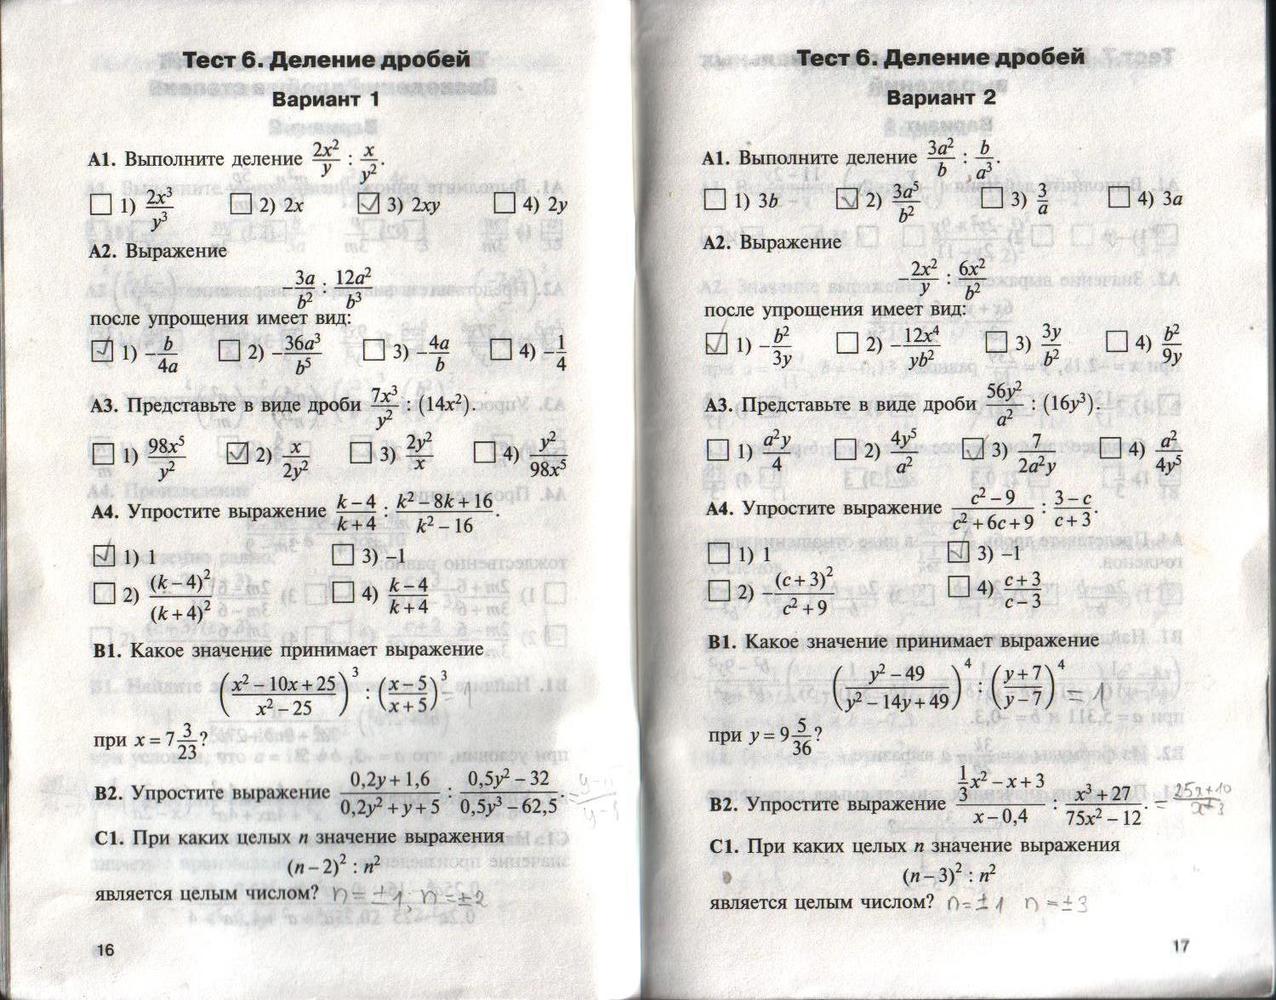 Вопросы теста а1. Контрольные работы по алгебре 8 класс а1 а2 б1 б2. Контрольно измерительные материалы 10 класс Алгебра. Контрольно измерительные материалы 11 класс Алгебра.